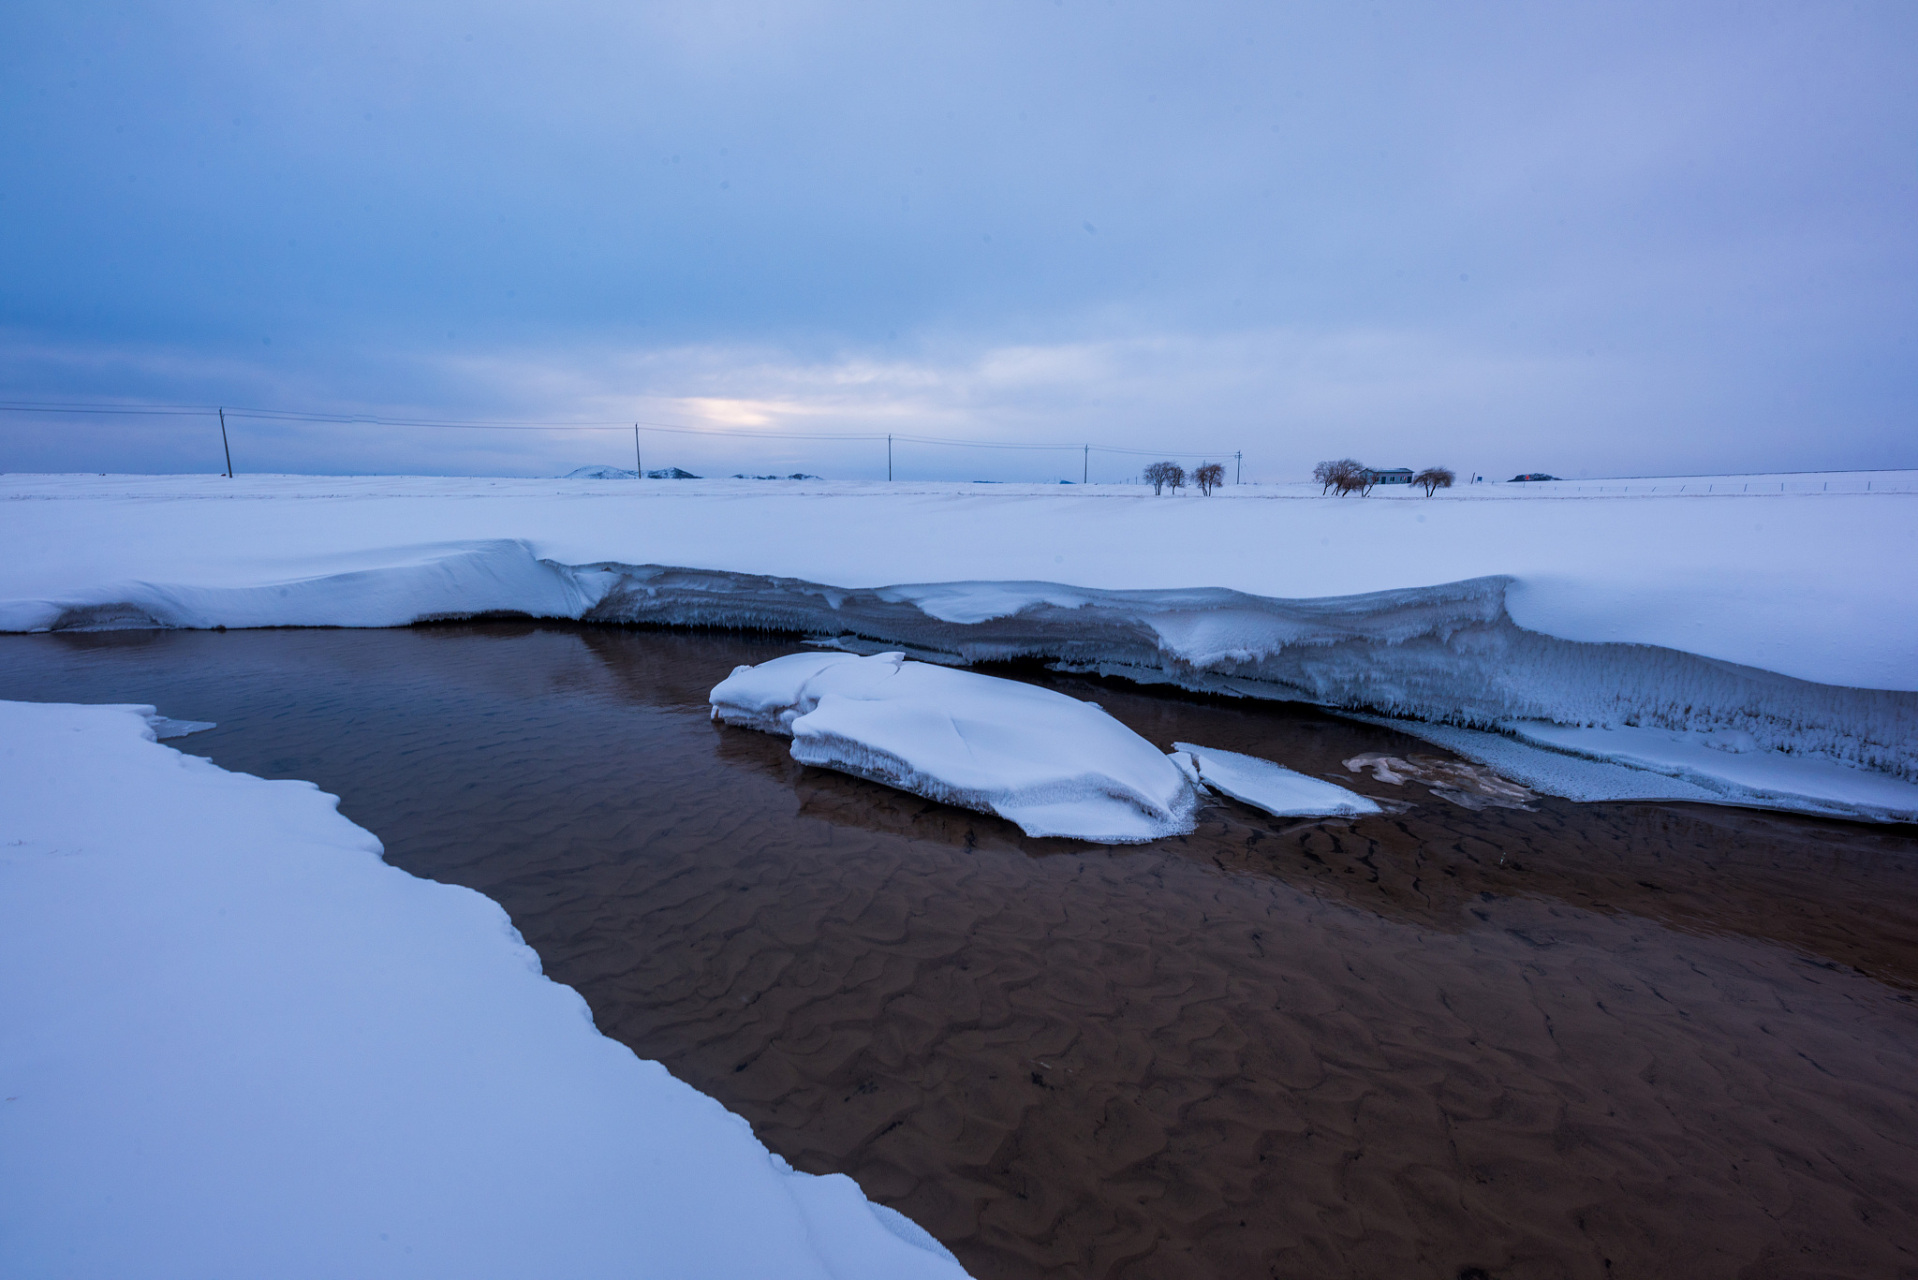 达里诺尔湖:位于内蒙古赤峰市的达里诺尔湖在冬季湖面封冻,呈现出壮丽